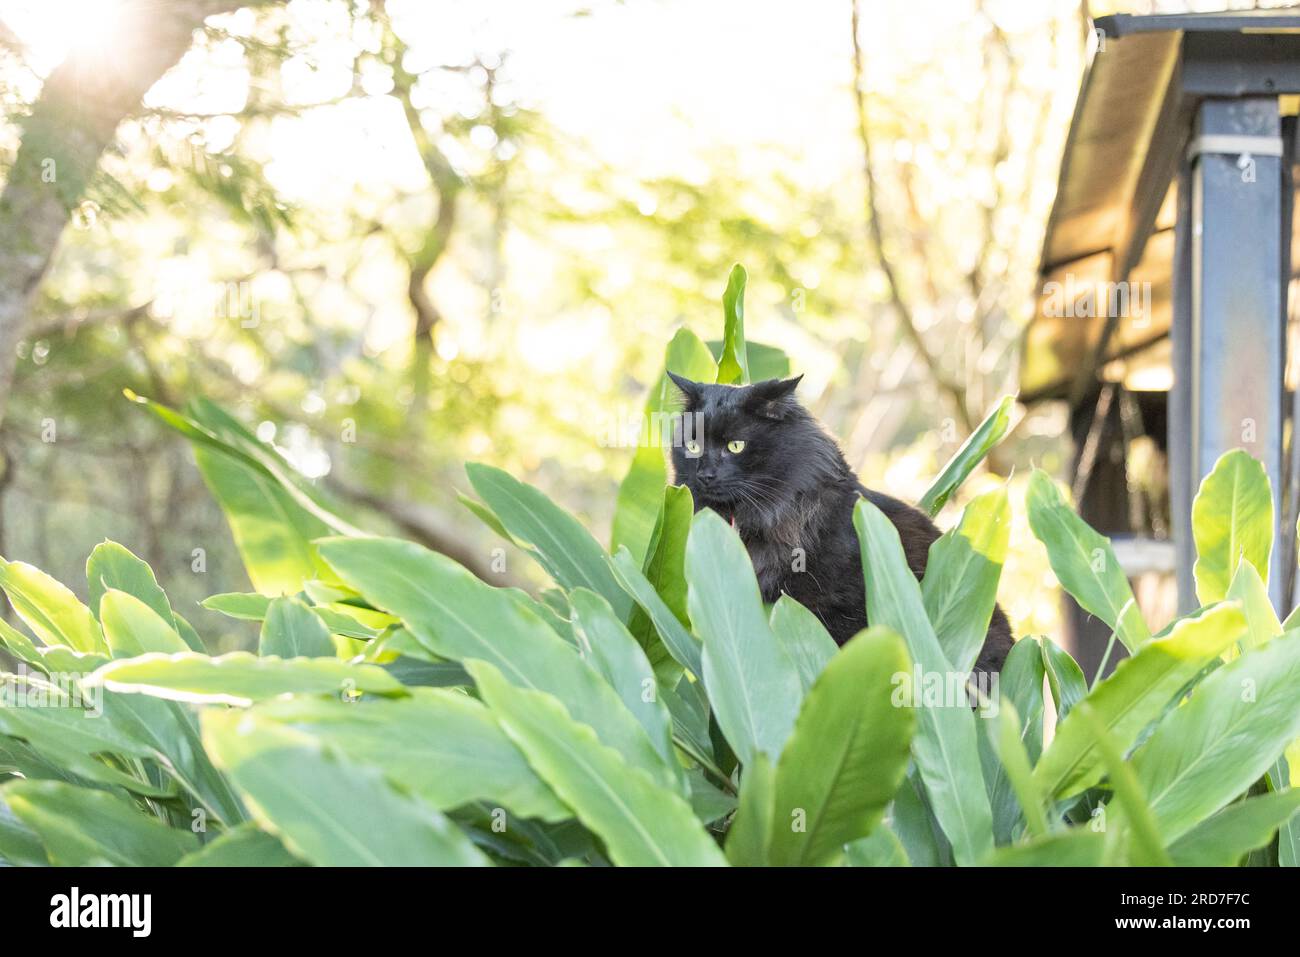 Schwarze Katze versteckt sich in grüner, grüner Pflanze im Dschungelgarten, teilweise freigelegt am hellen Nachmittag Stockfoto